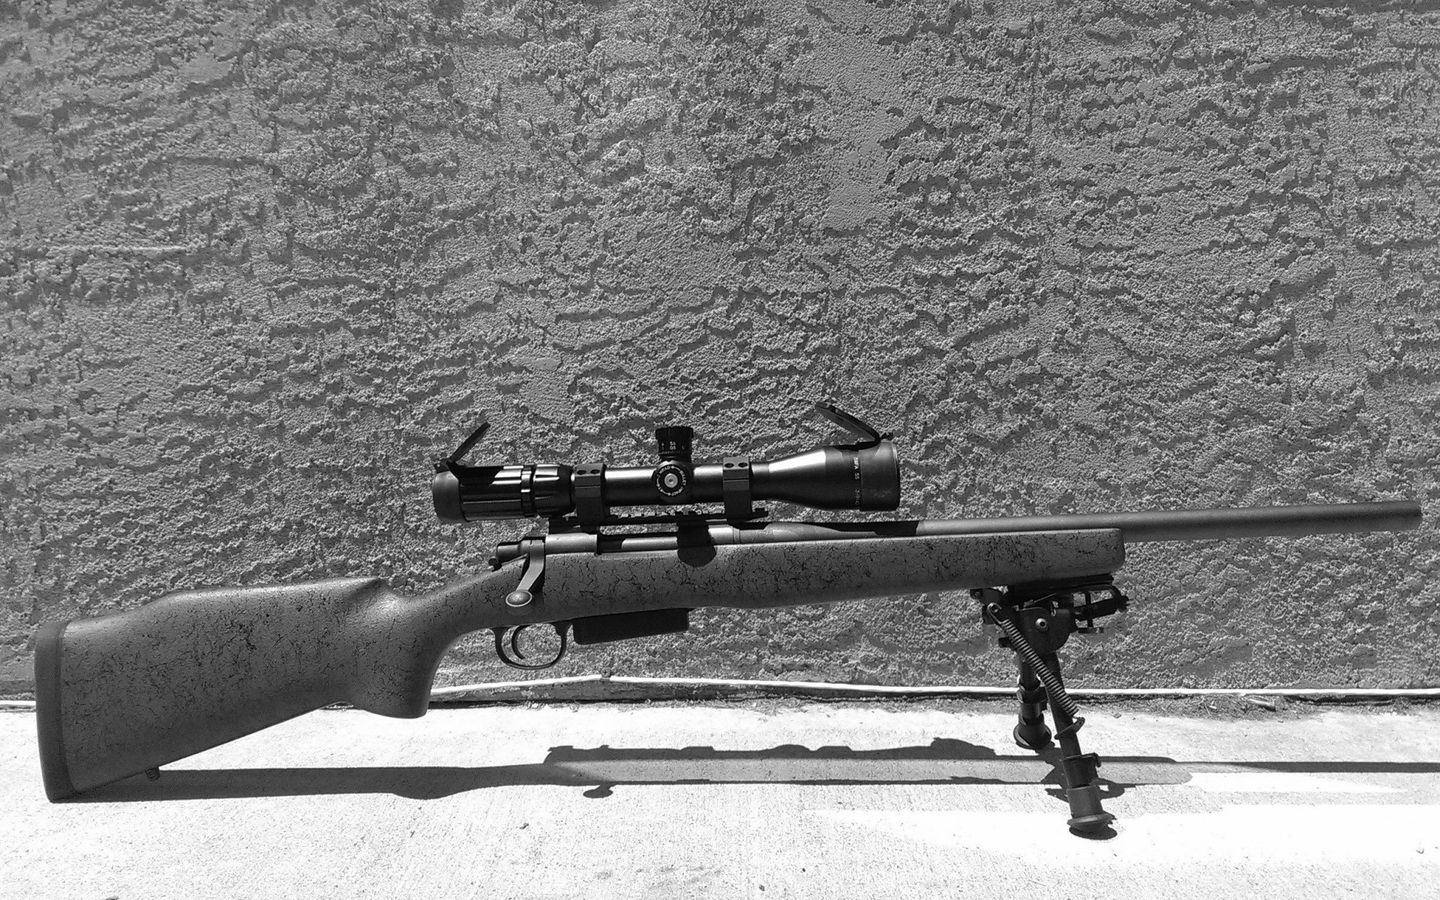 Image: Sniper, shotgun, rack, Remington 700, optical sight, wall, texture